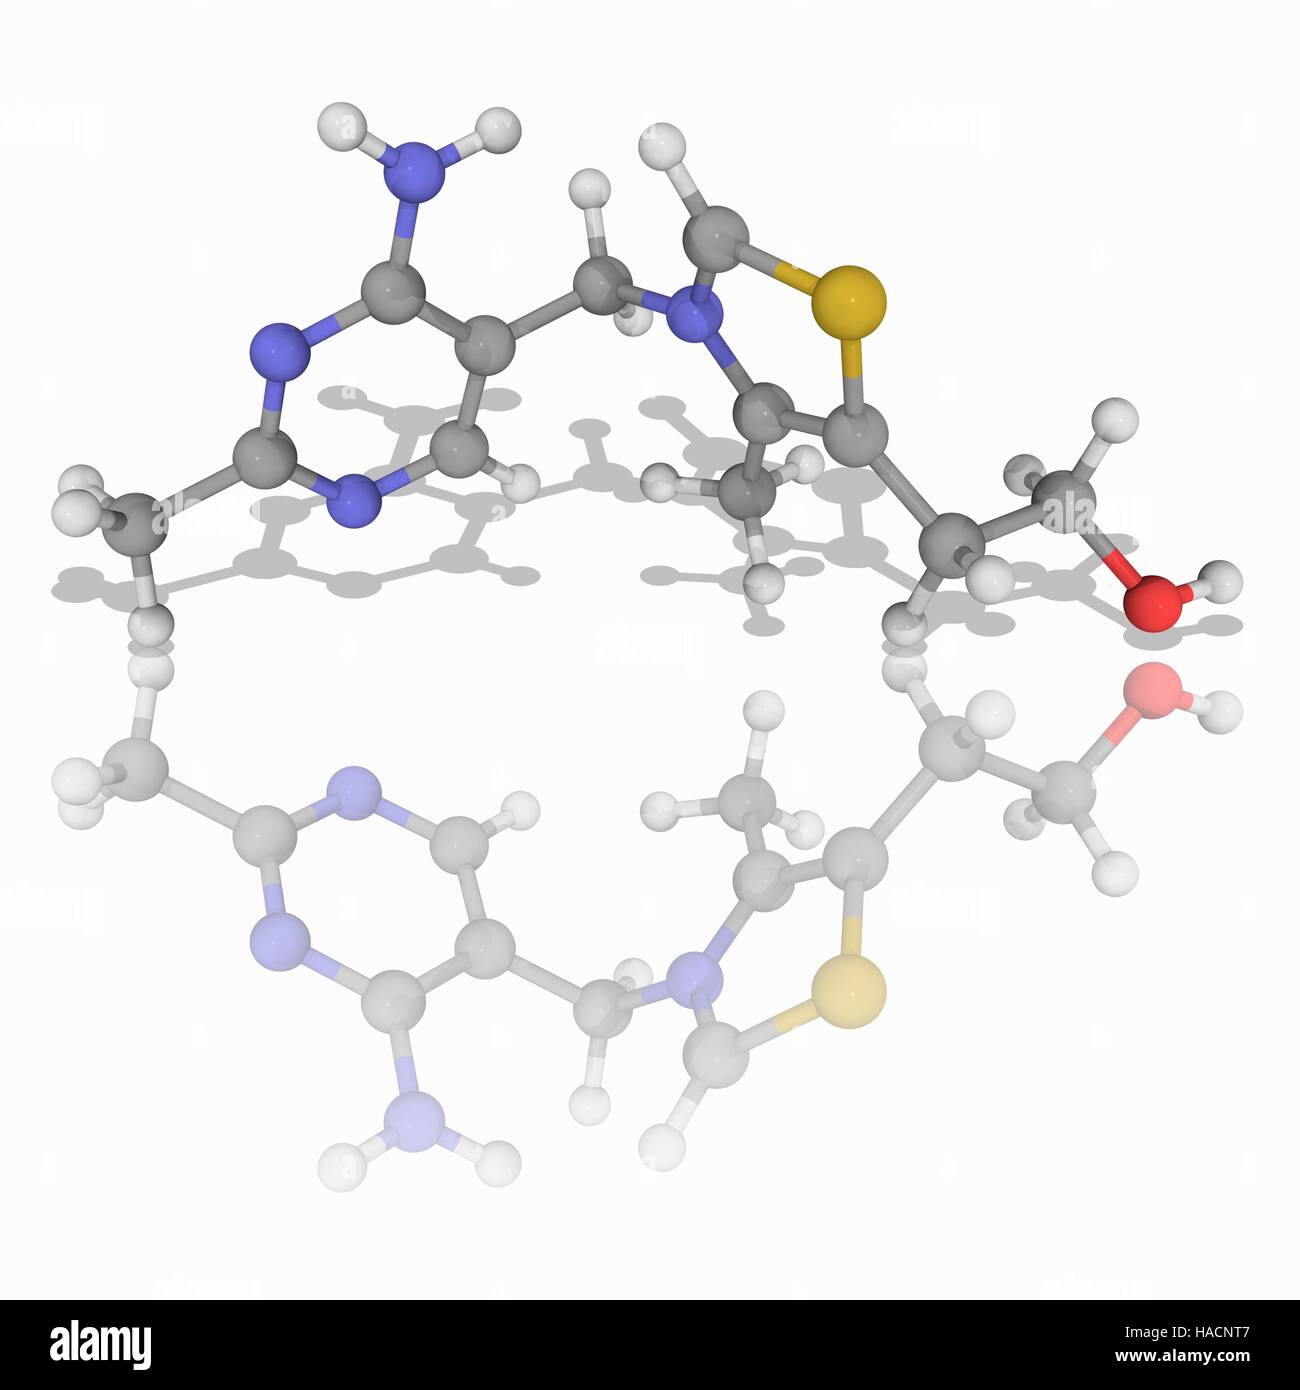 Vitamin B1. Molekülmodell von Thiamin (C12. H17. N4. O.S), auch als Thiamin und Vitamin B1. Ein Mangel dieses Vitamins führt zu eine Krankheit namens Beriberi. Atome als Kugeln dargestellt werden und sind farblich gekennzeichnet: Kohlenstoff (grau), Wasserstoff (weiß), Stickstoff (blau), Sauerstoff (rot) und Schwefel (gelb). Abbildung. Stockfoto